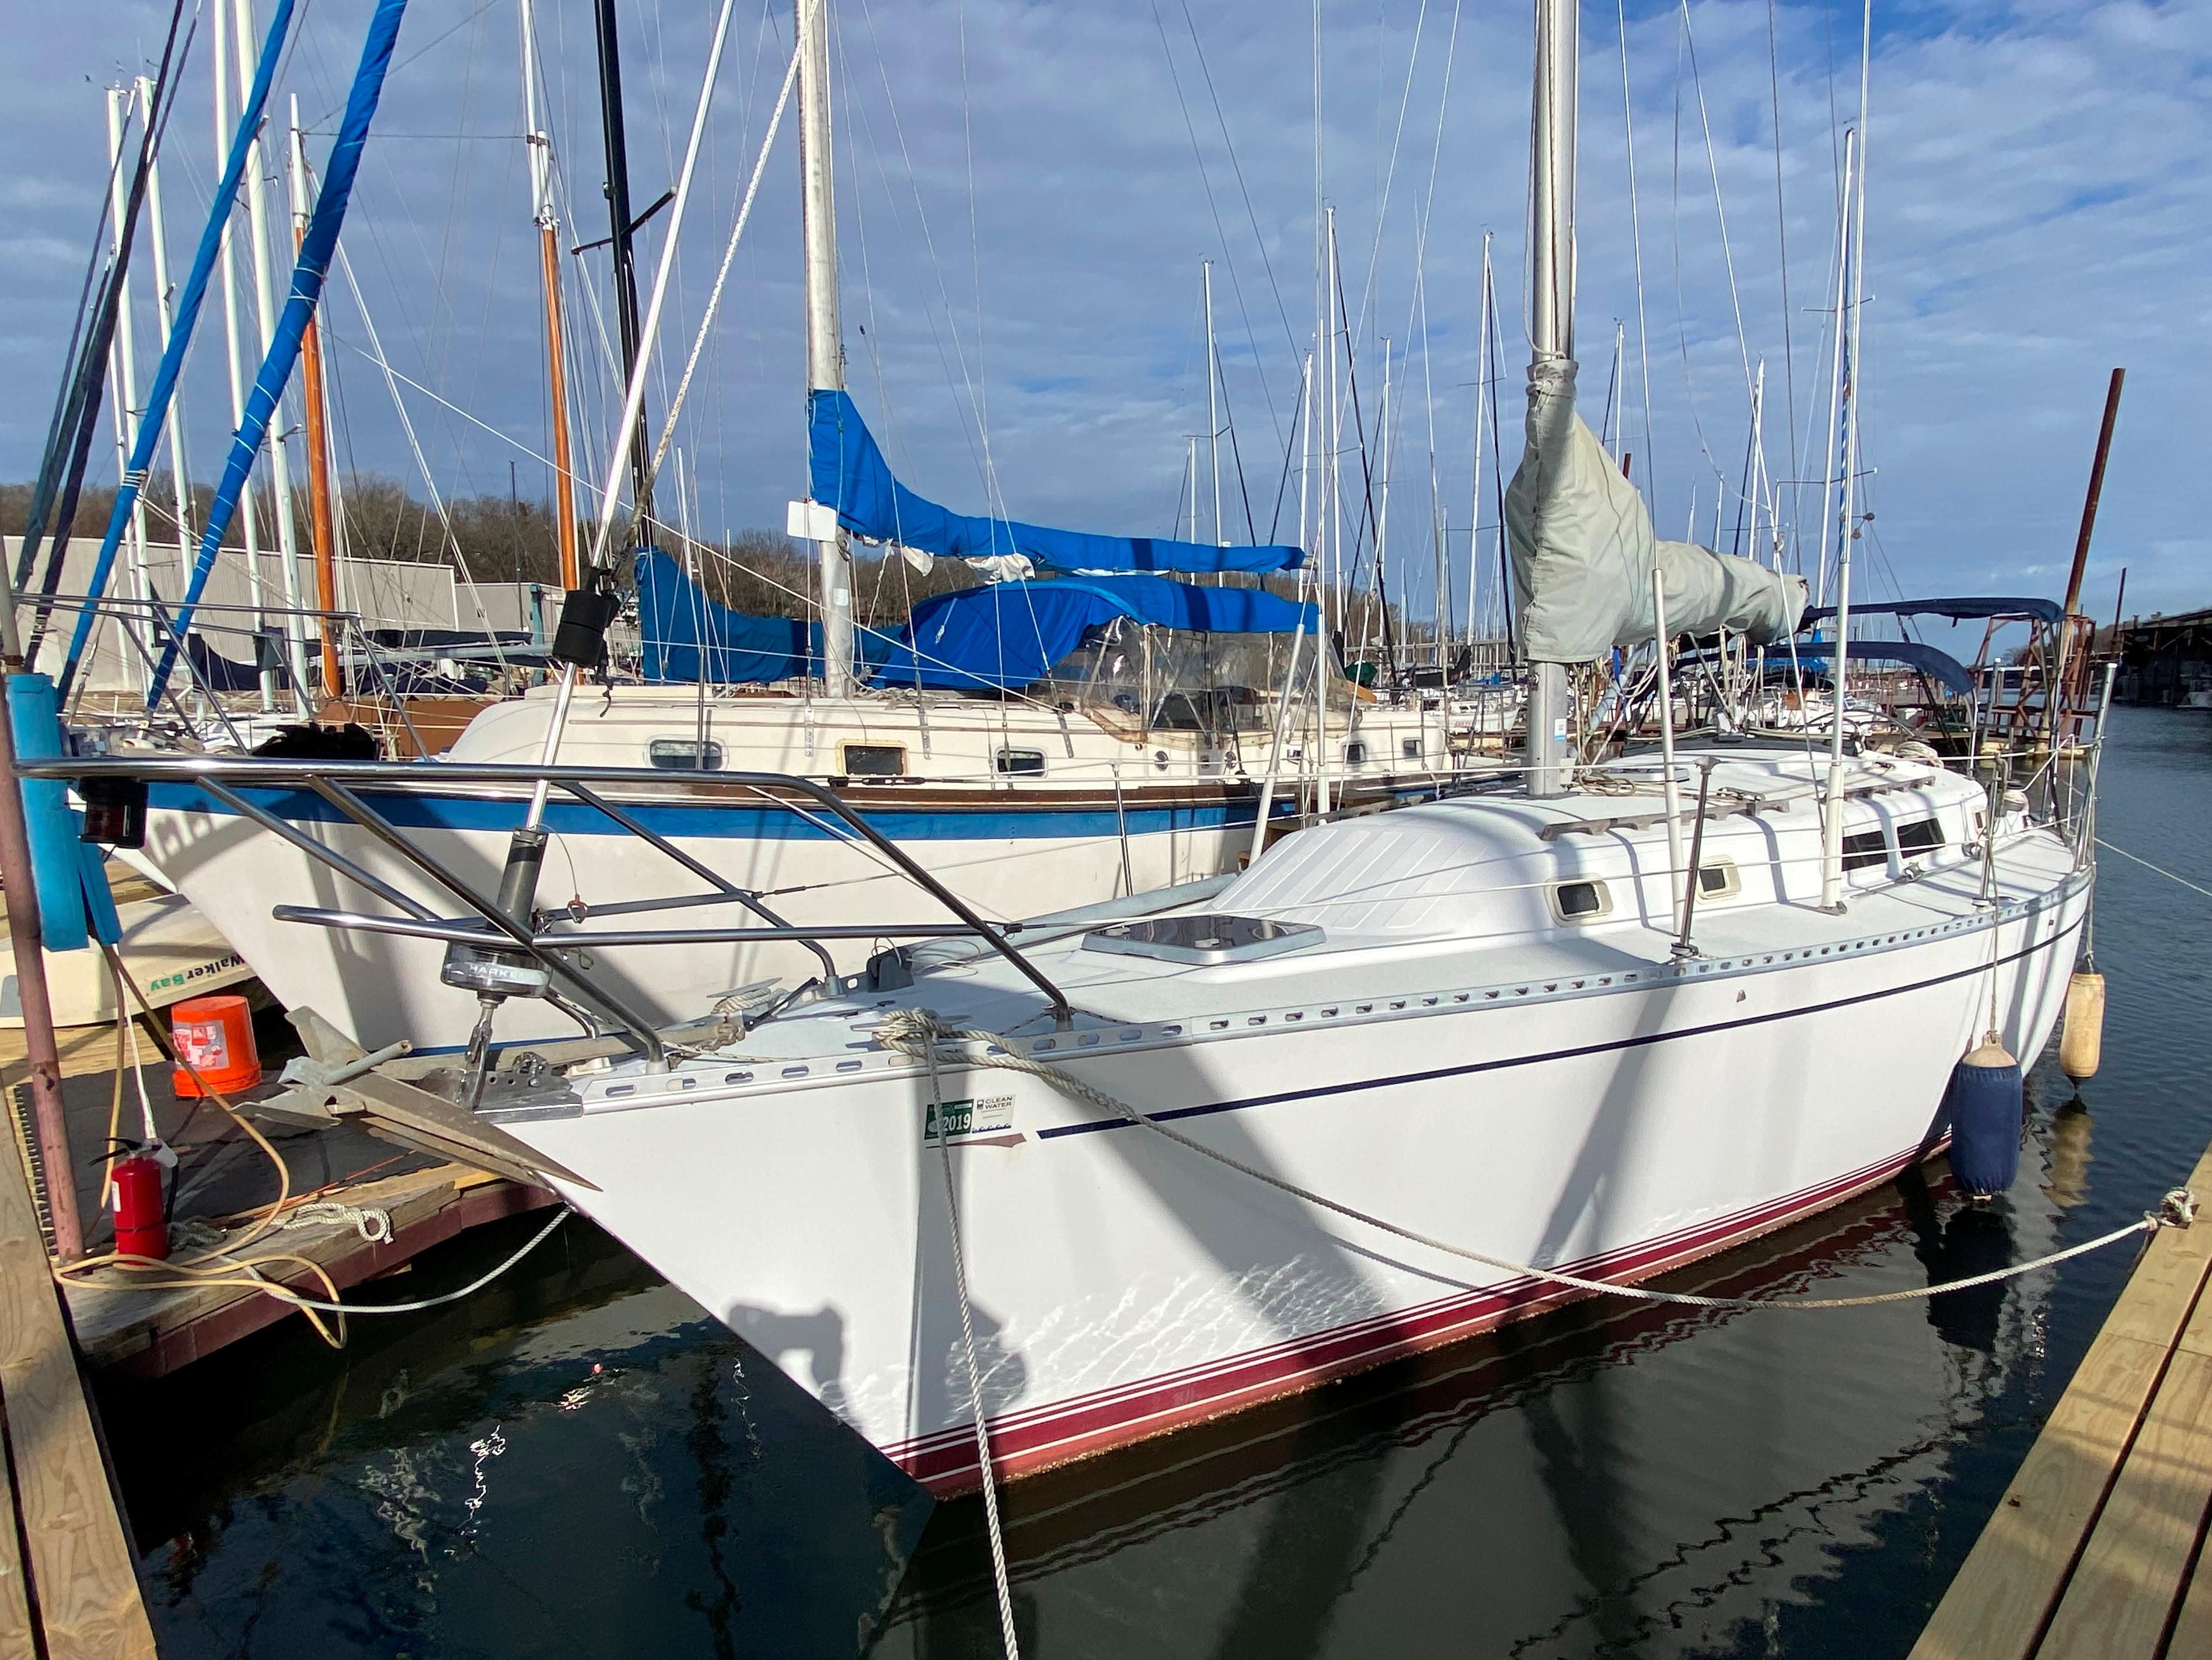 islander 34 sailboat for sale